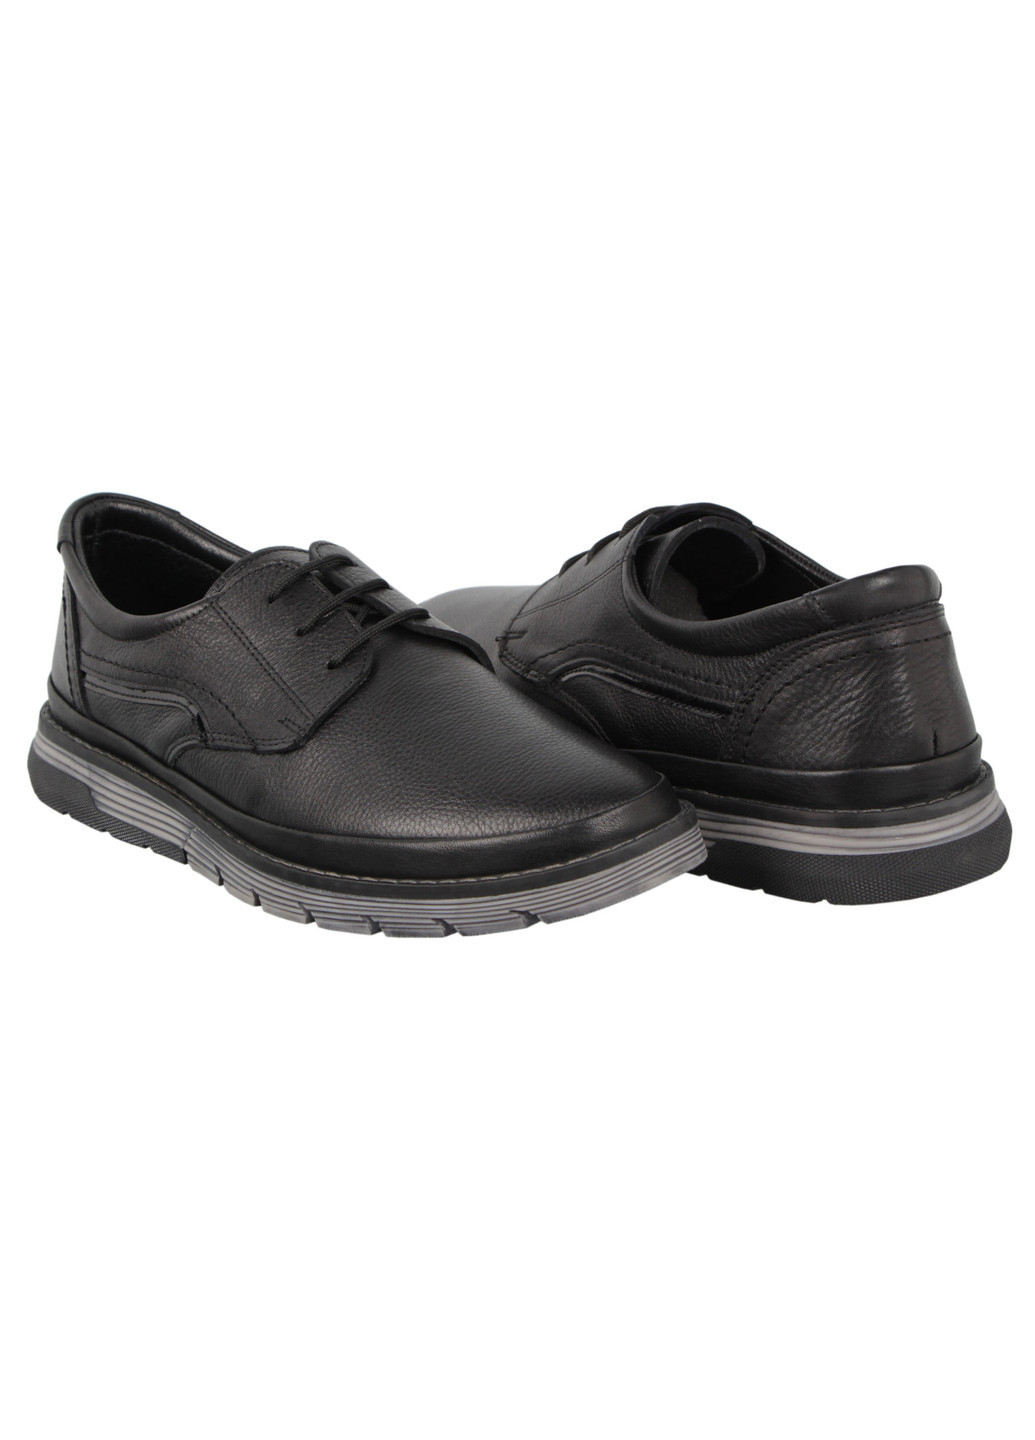 Черные мужские туфли 197729 Buts на шнурках